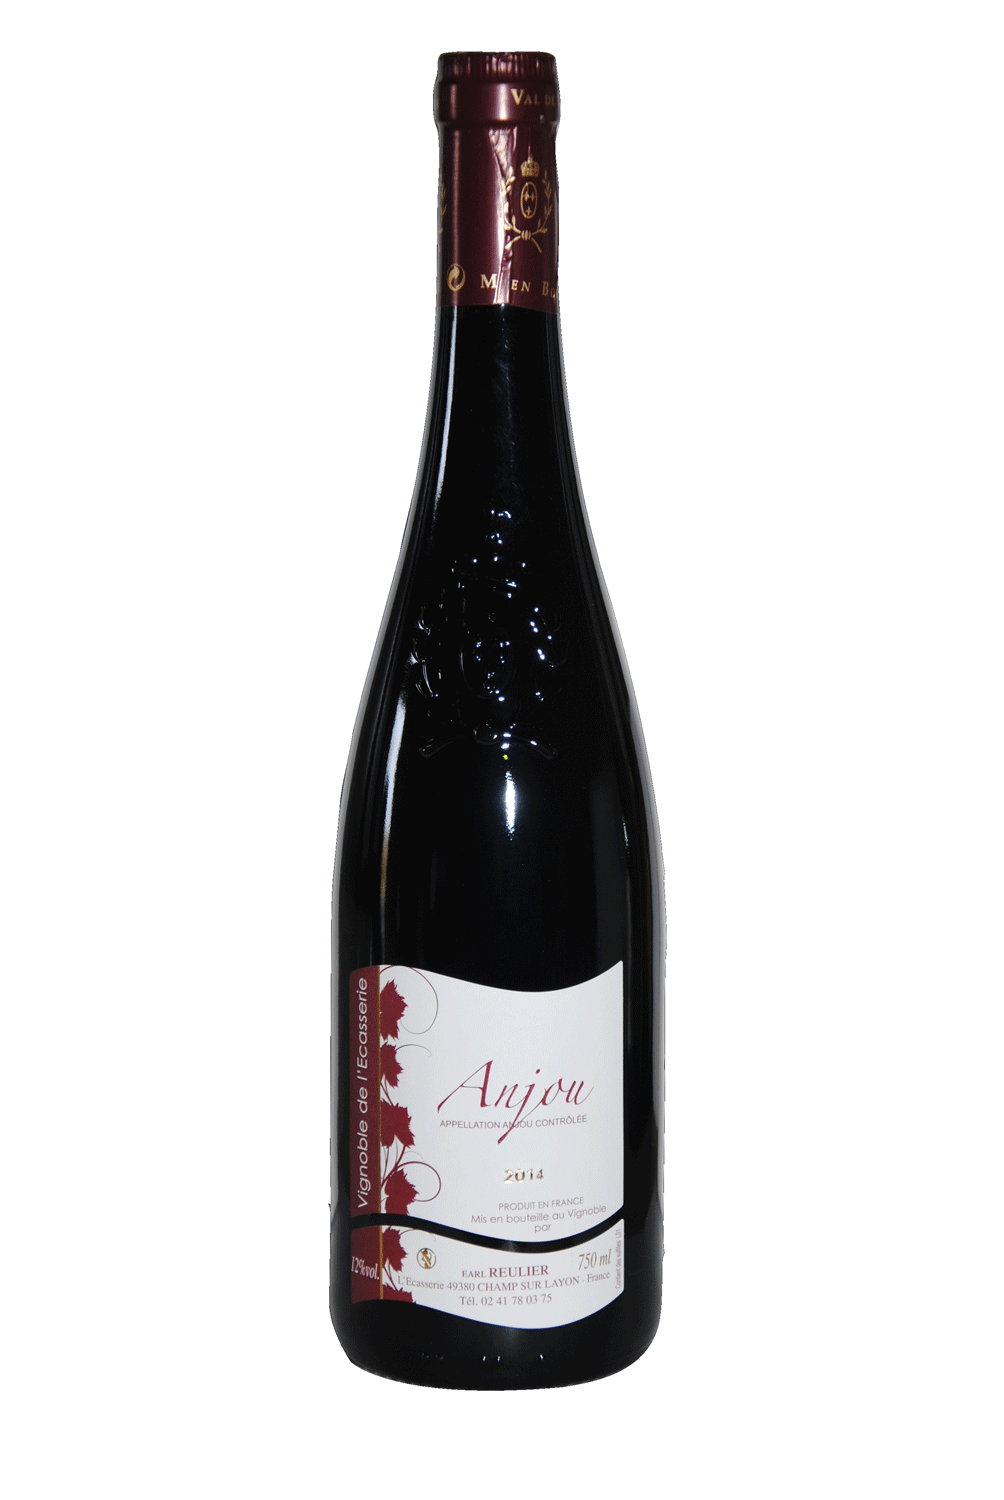 Anjou Rouge, Vignoble de l'Ecasserie, EARL REULIER